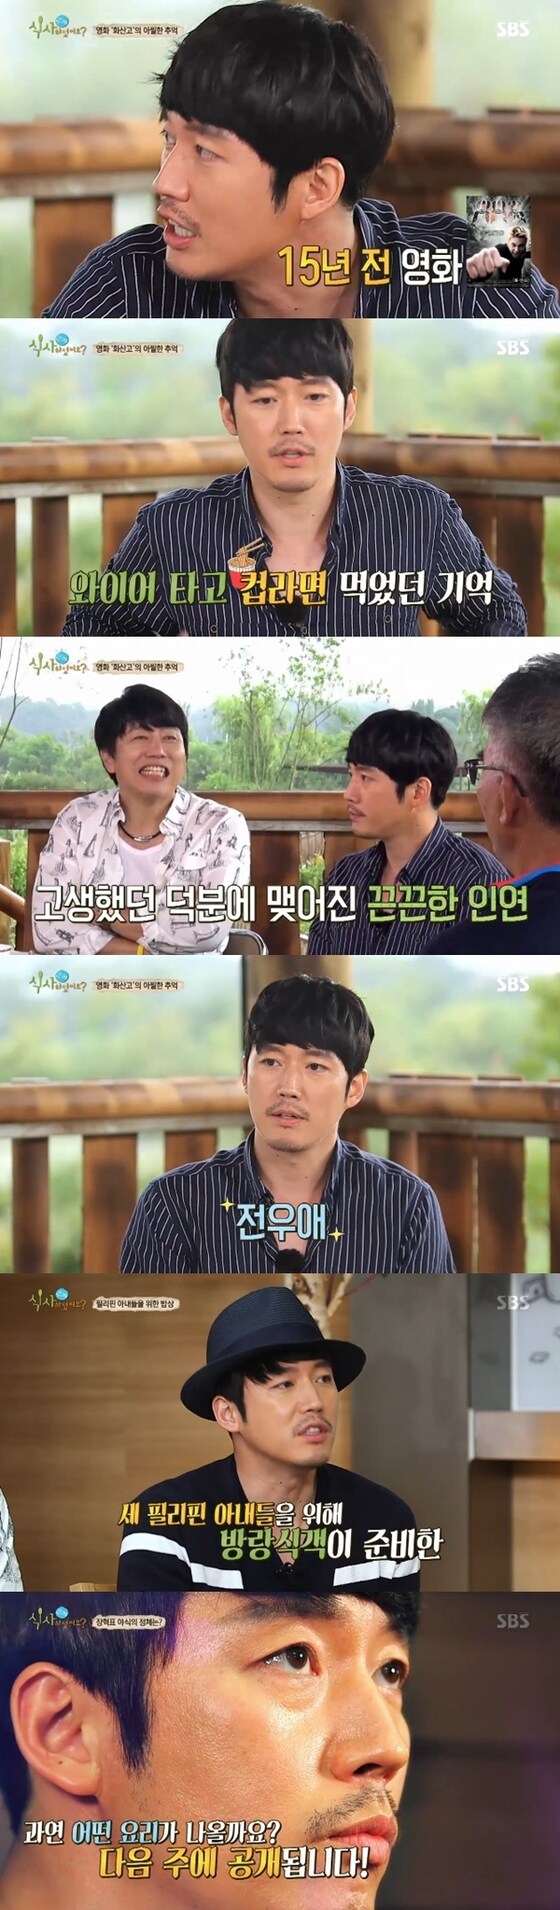 배우 장혁이 25일 방송된 '식사하셨어요'에 출연했다. © News1star / SBS '식사하셨어요' 캡처